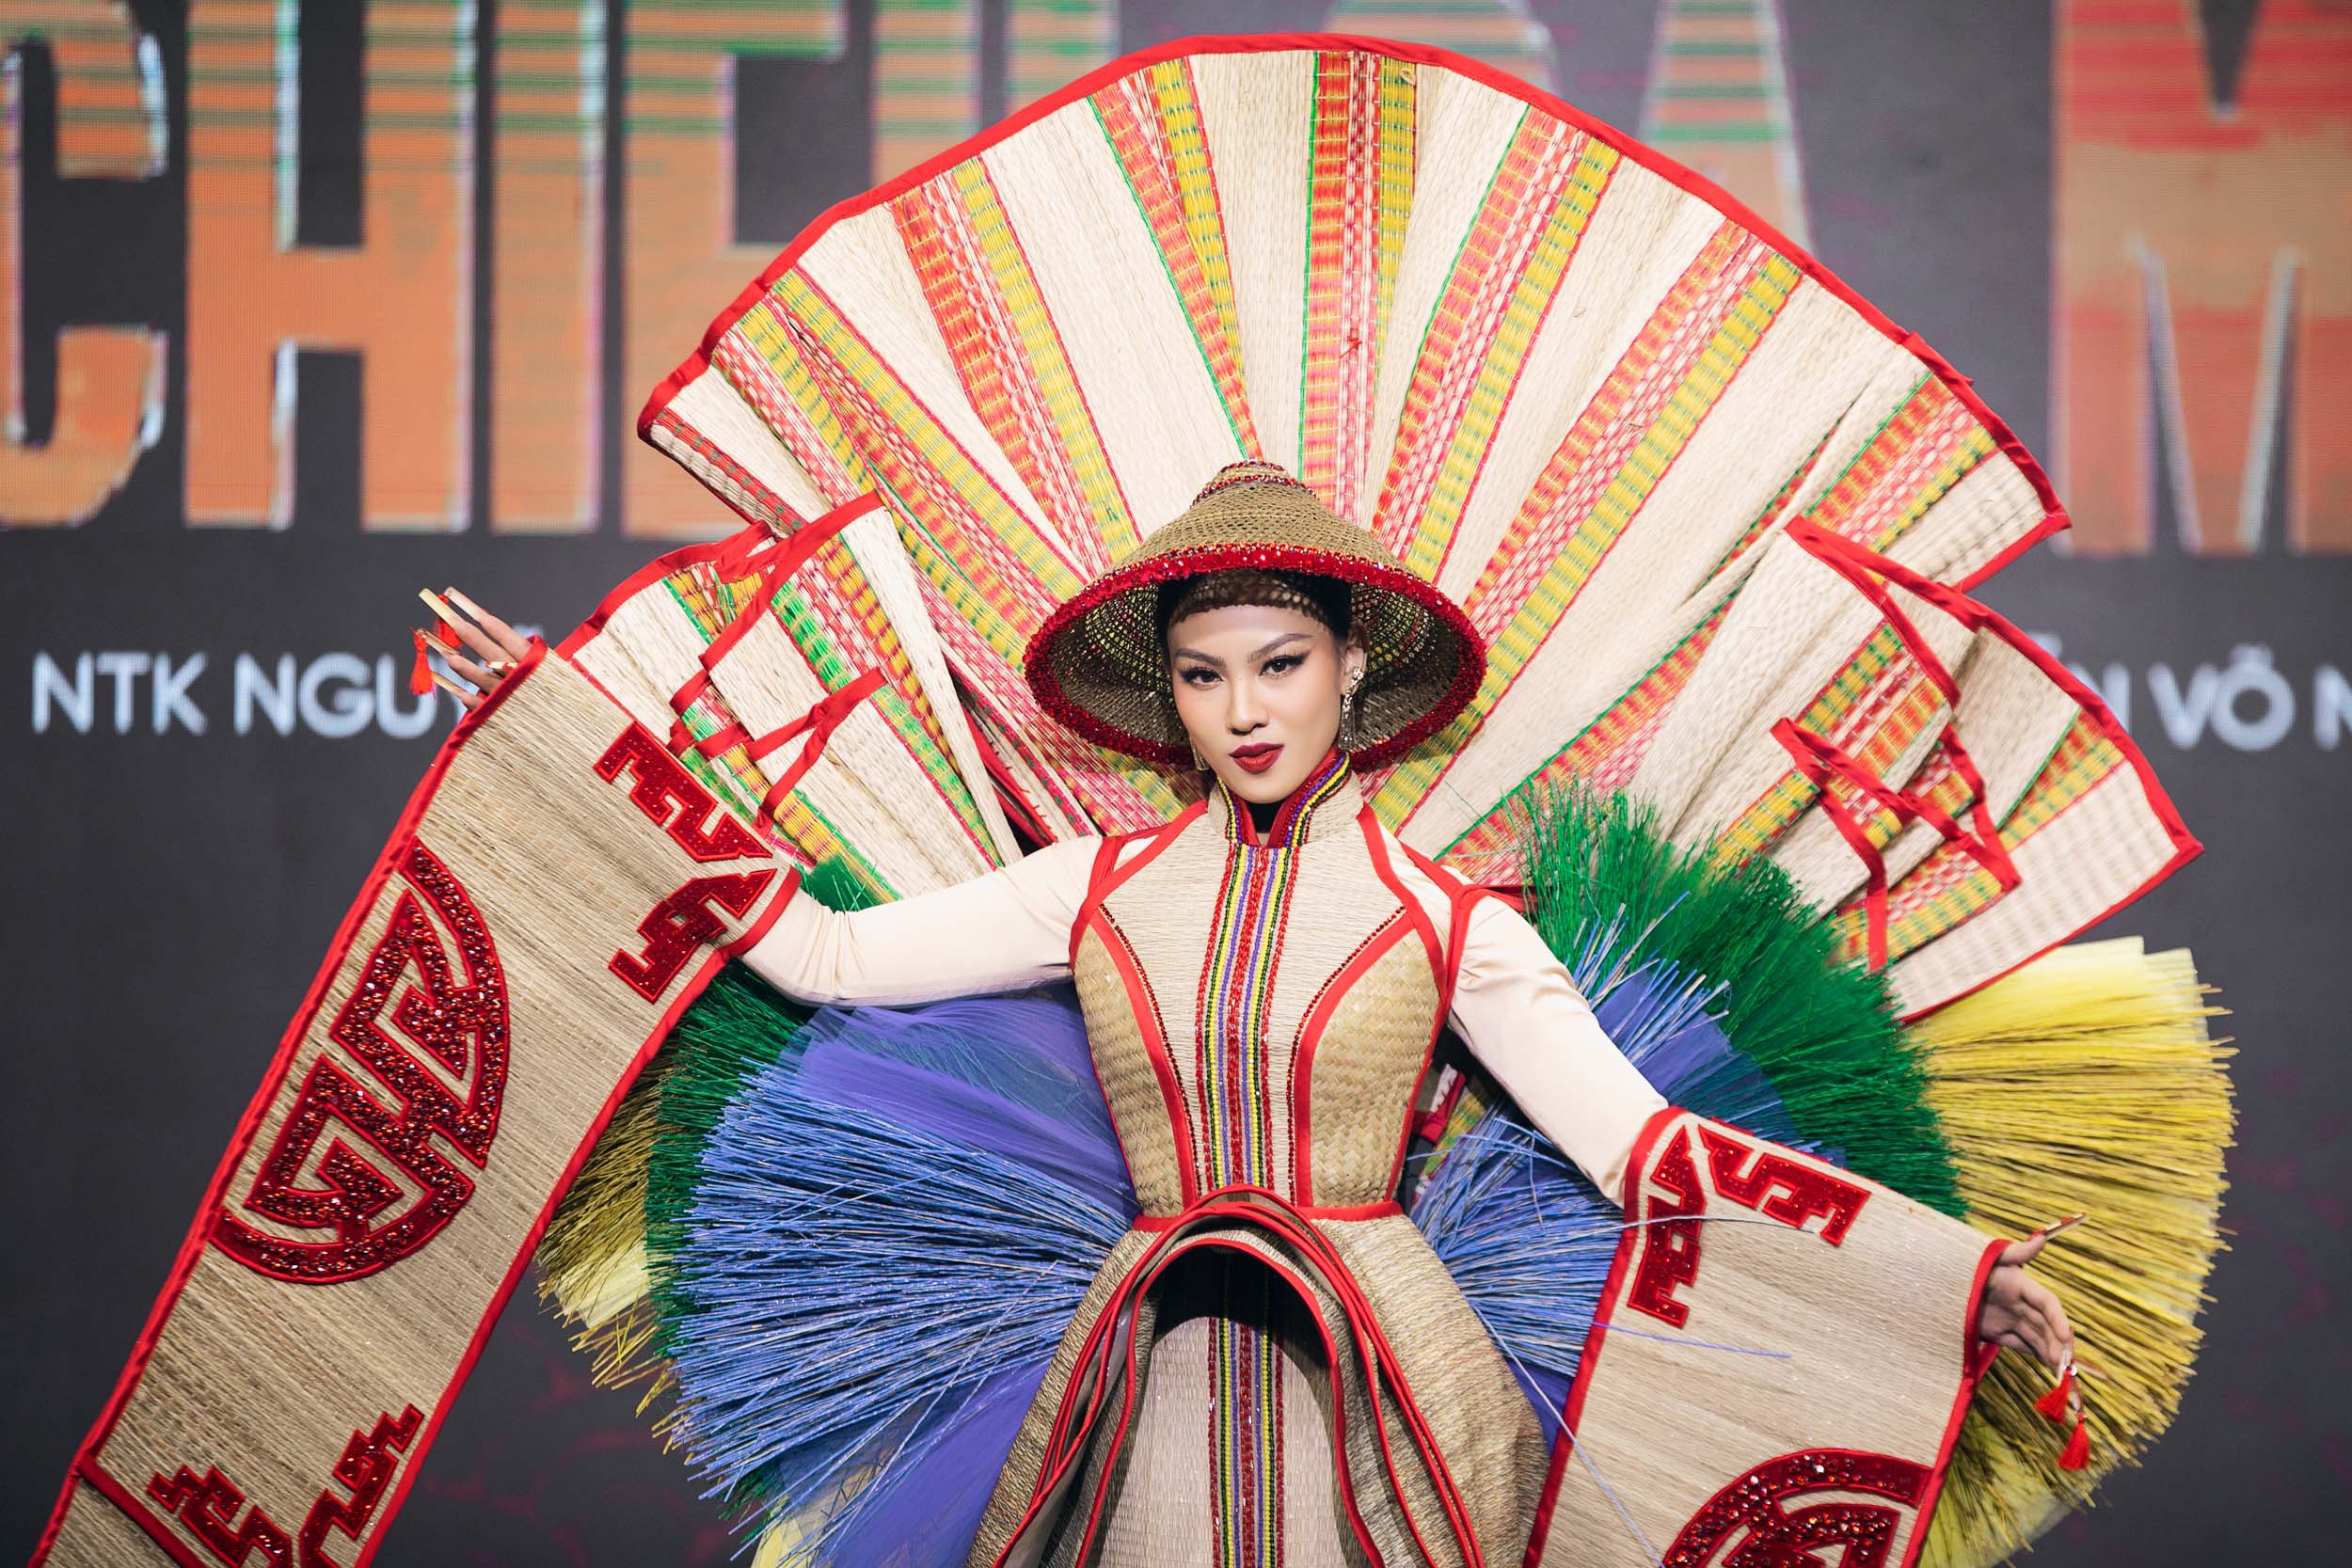 Bánh tráng trộn- gỏi cuốn- tôm tre mỹ nghệ trở thành trang phục dân tộc lộng lẫy tại Hoa hậu hoàn vũ Việt Nam